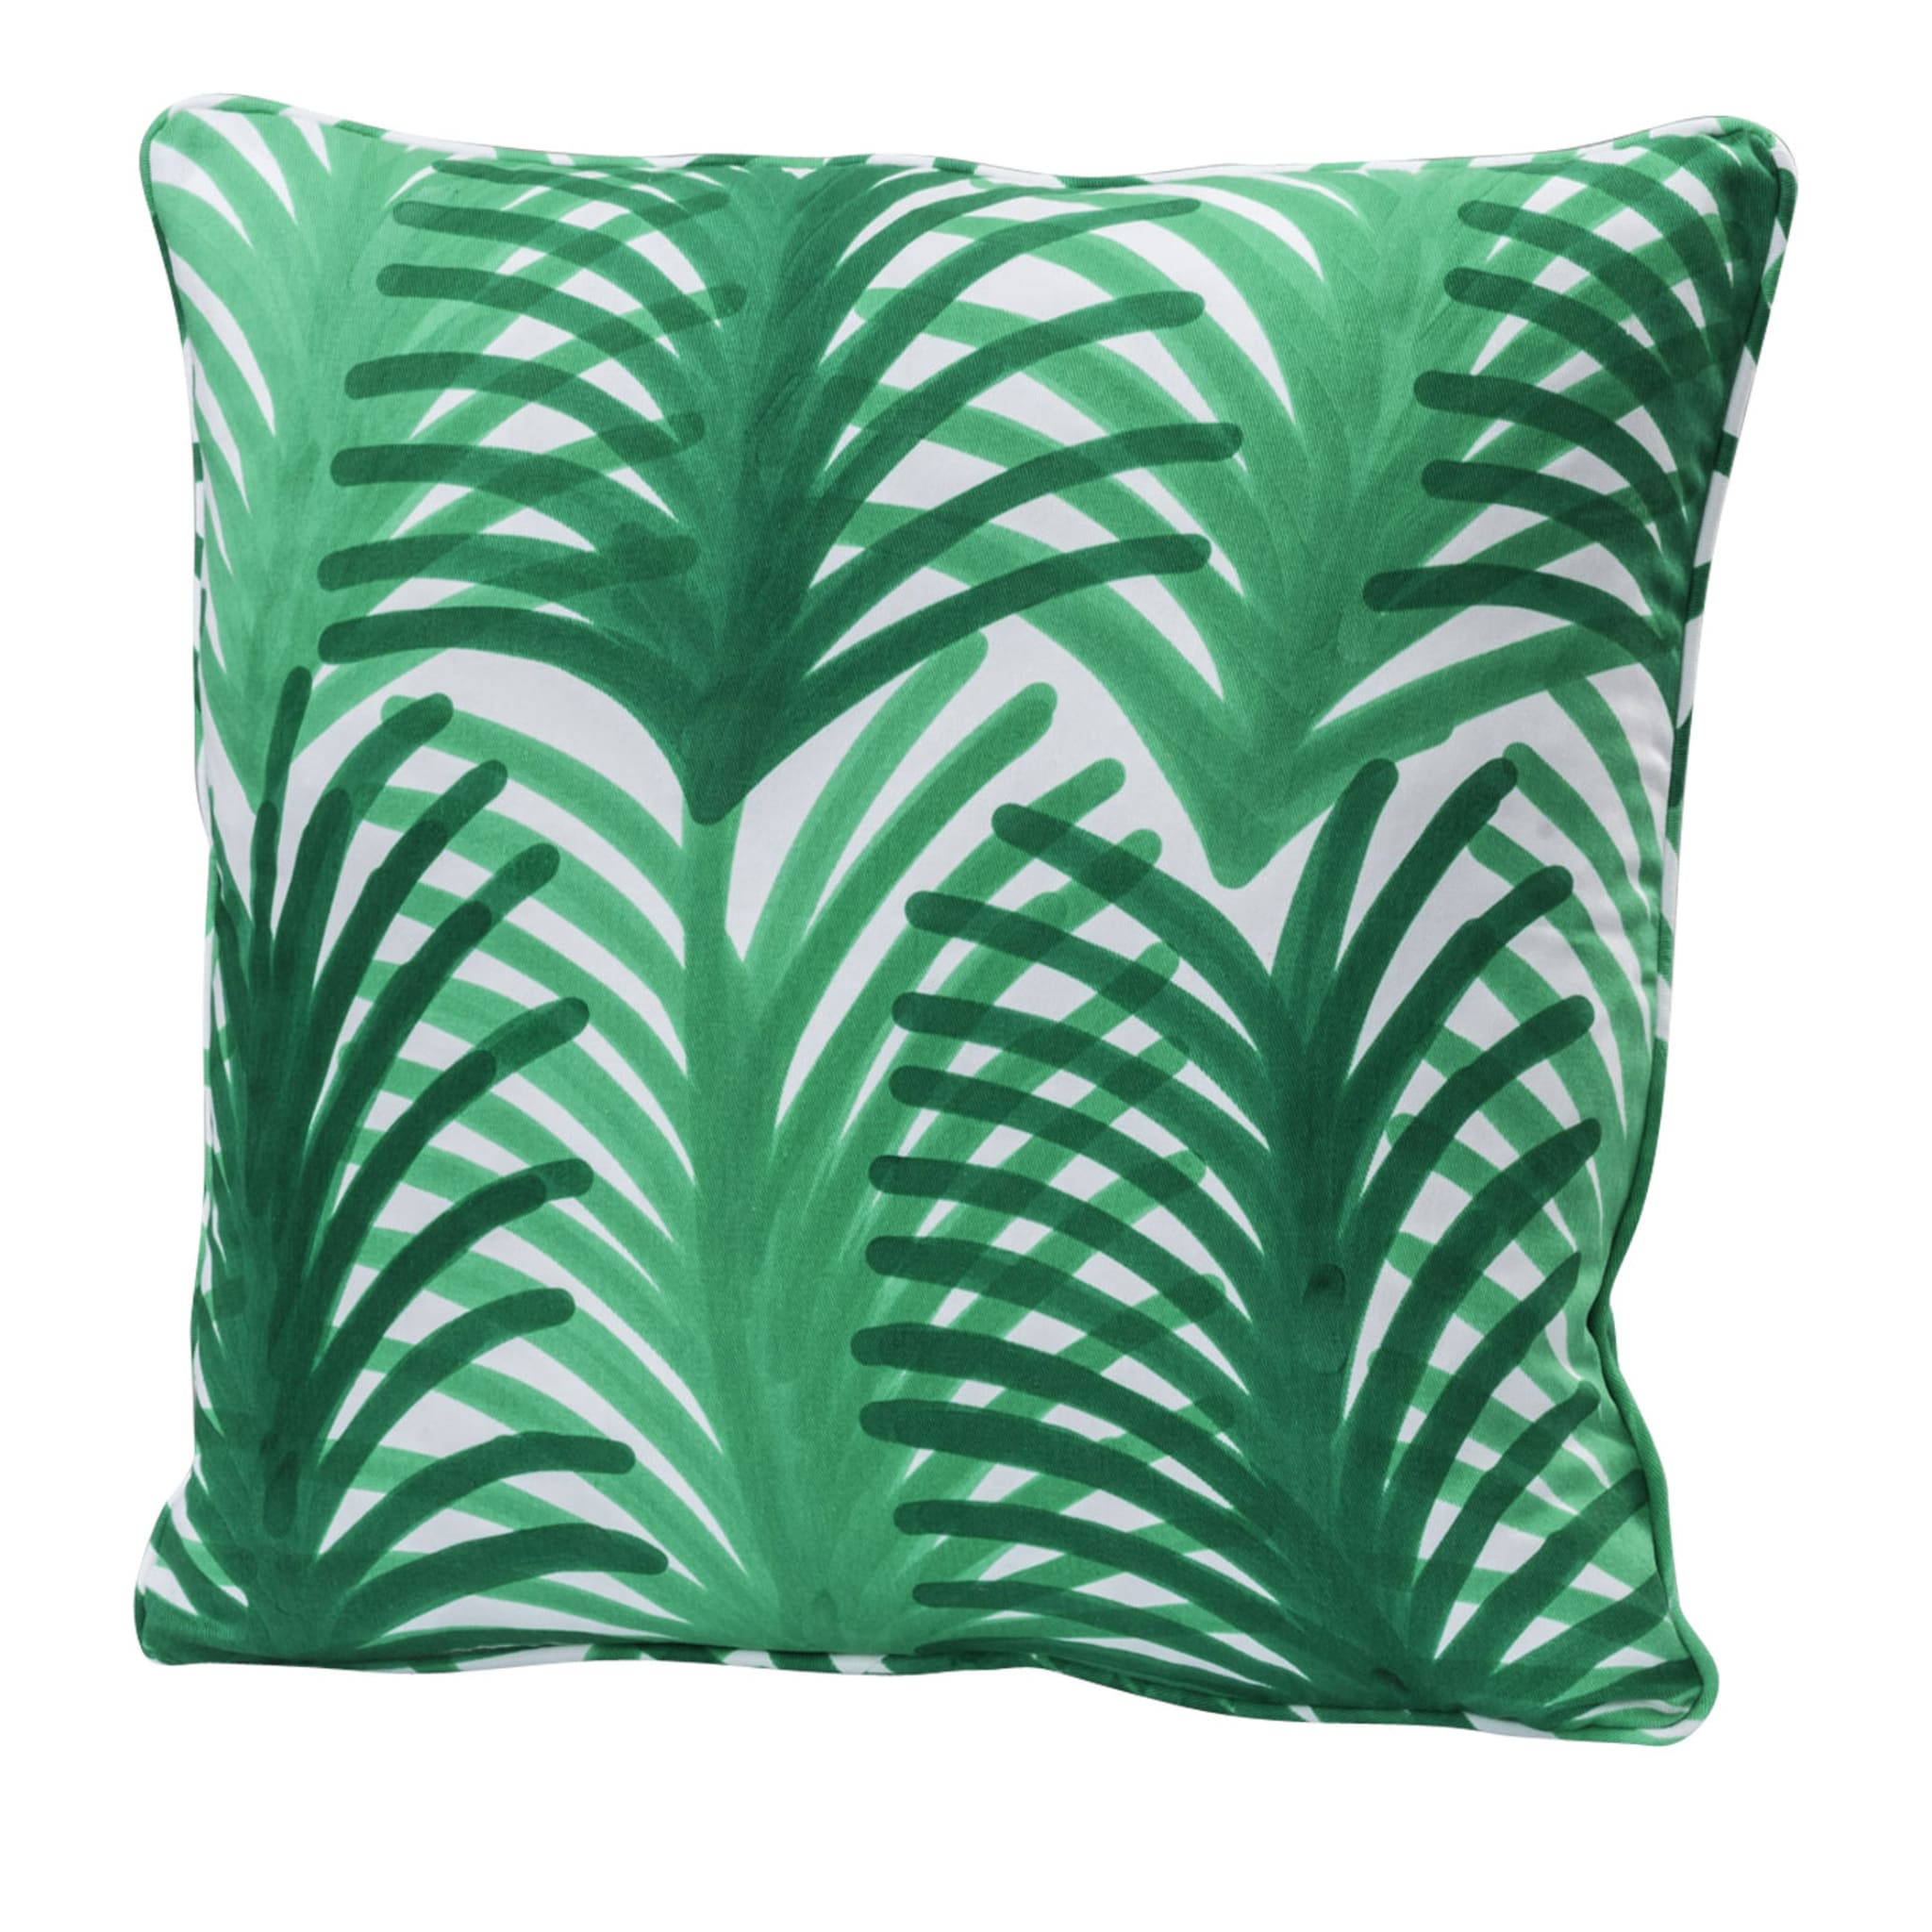 Palme Green Cushion - Alternative view 1